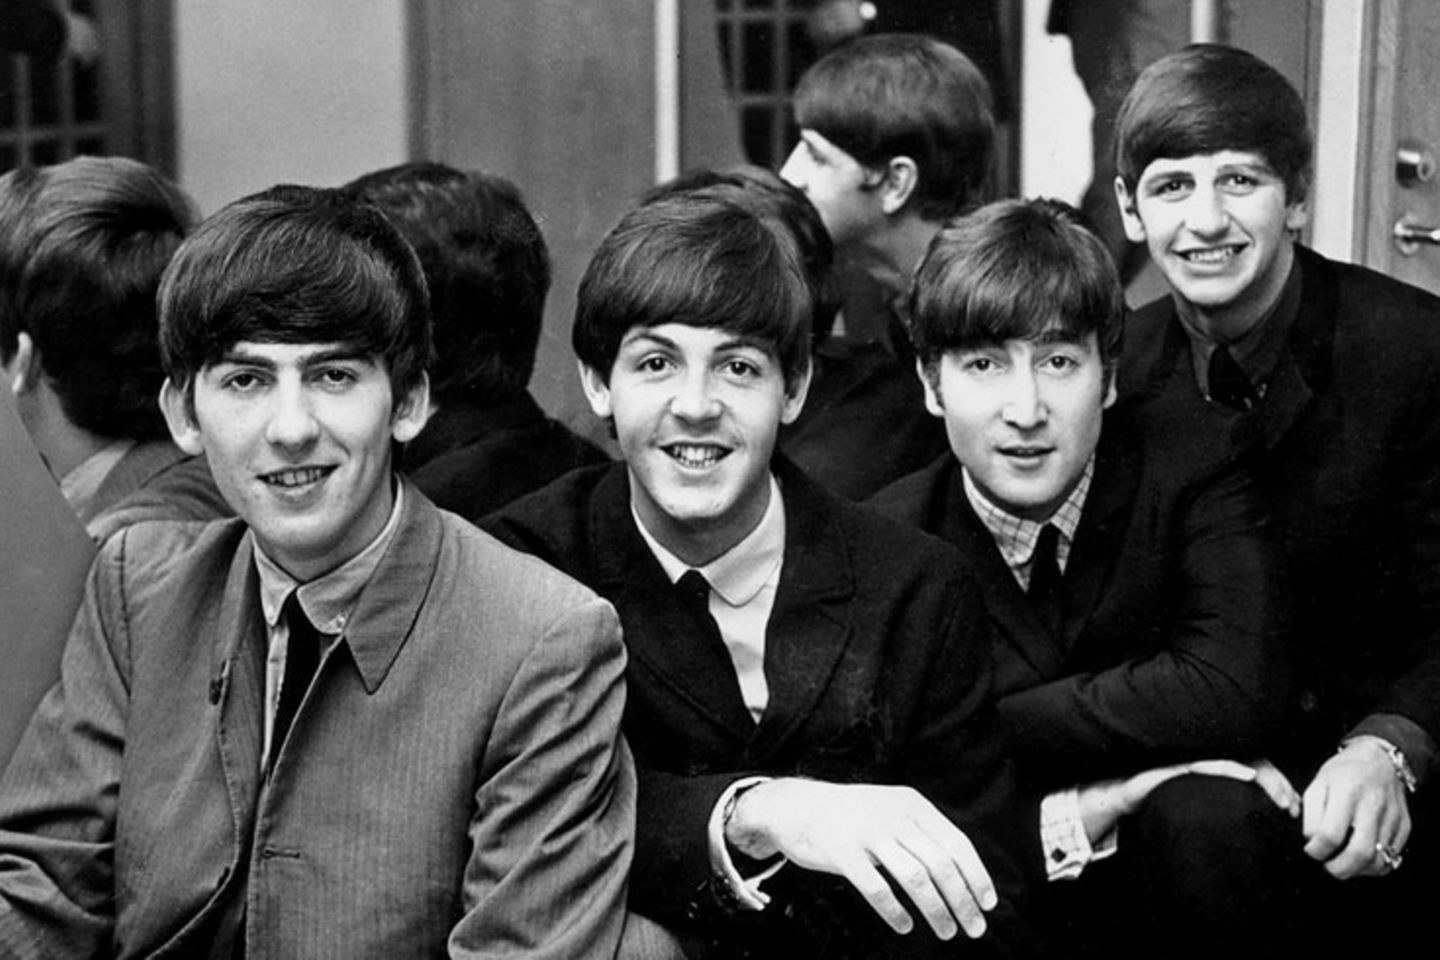 Ringo (r.) mit seinen Bandkollegen George Harrison, Paul McCartney und John Lennon (v. l.). Dass aus ihm einmal der berühmteste Schlagzeuger der Welt werden würde, war bei seiner Geburt alles andere als wahrscheinlich